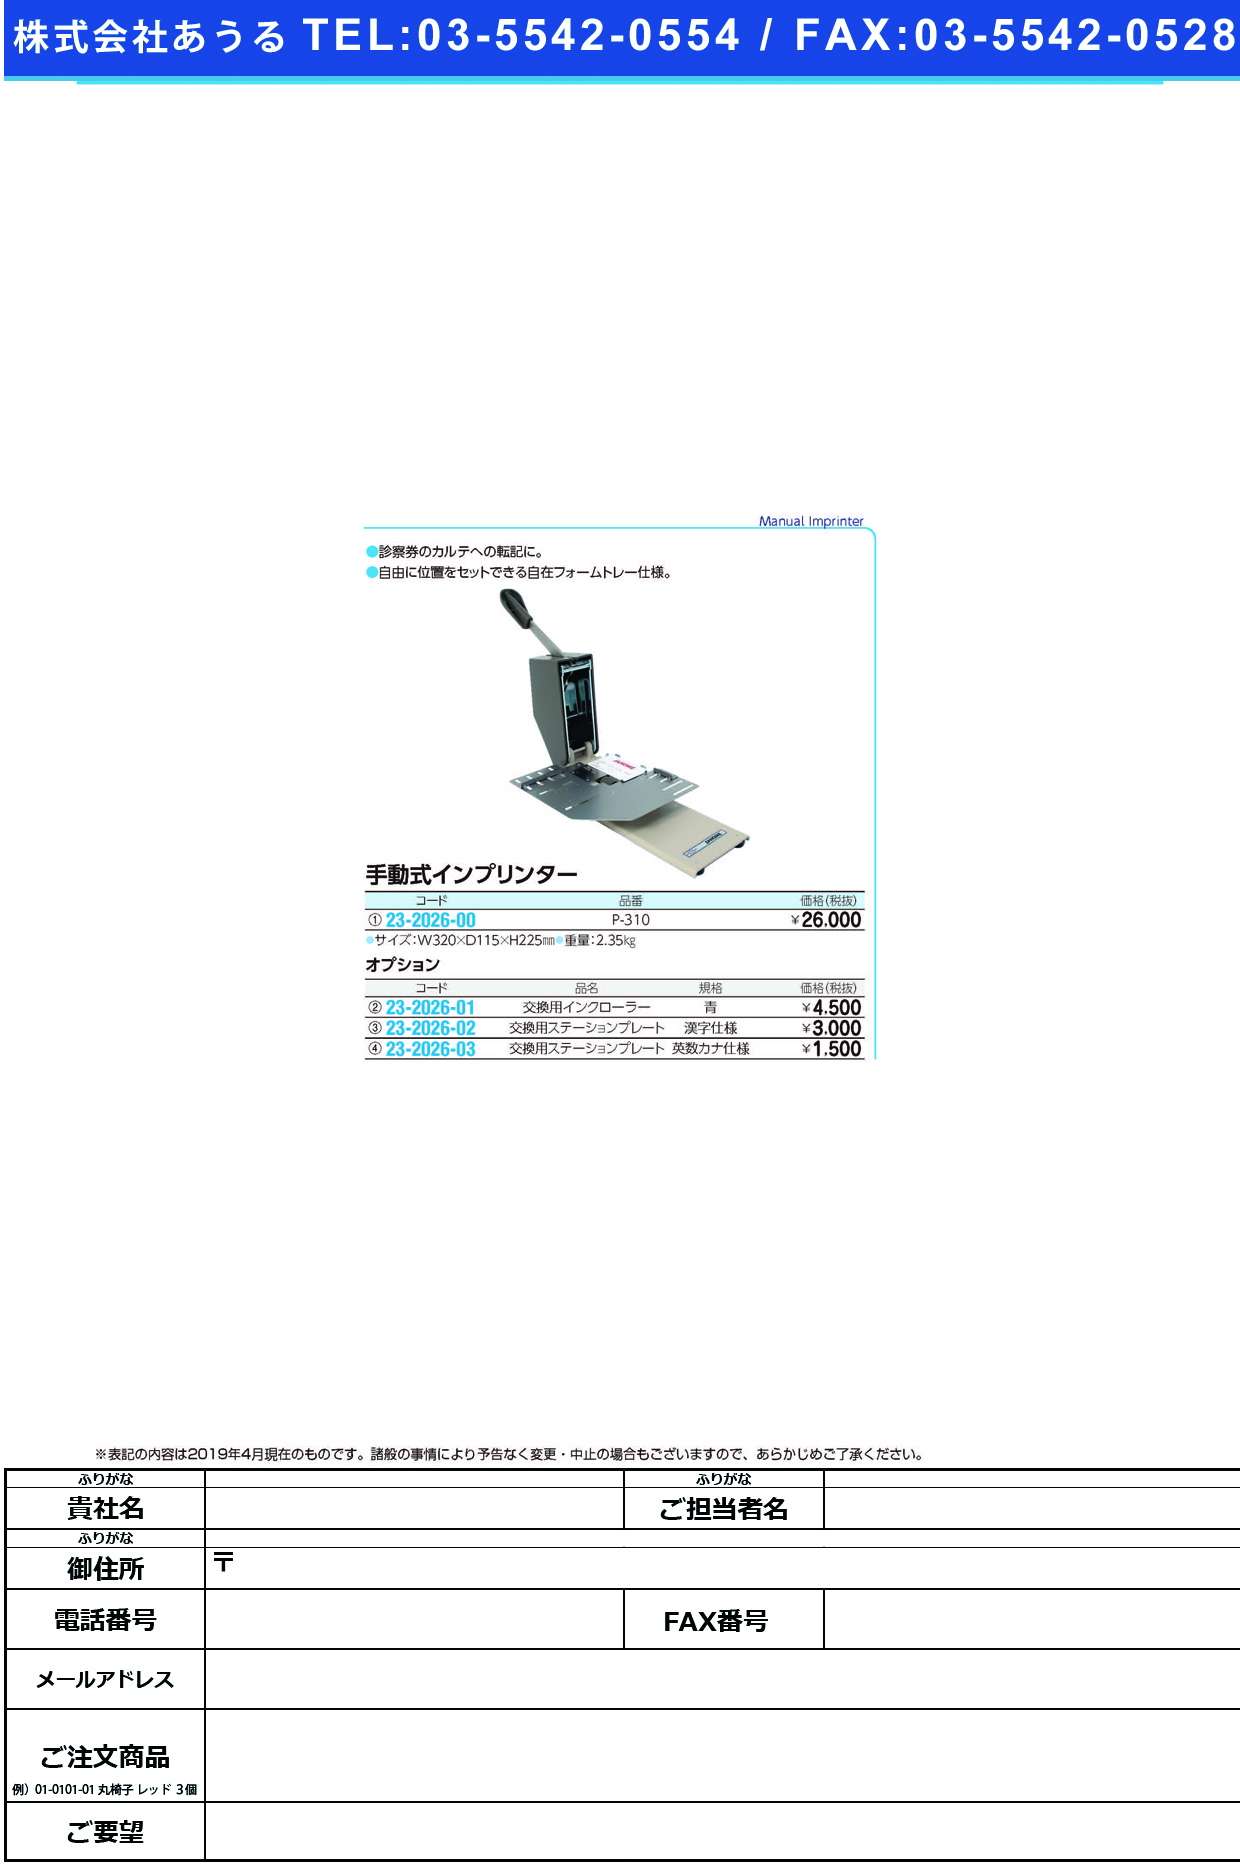 (23-2026-01)インプリンター用インクローラー（青） P-310ﾖｳ ｲﾝﾌﾟﾘﾝﾀｰﾖｳｲﾝｸﾛｰﾗｰｱｵ【1個単位】【2019年カタログ商品】